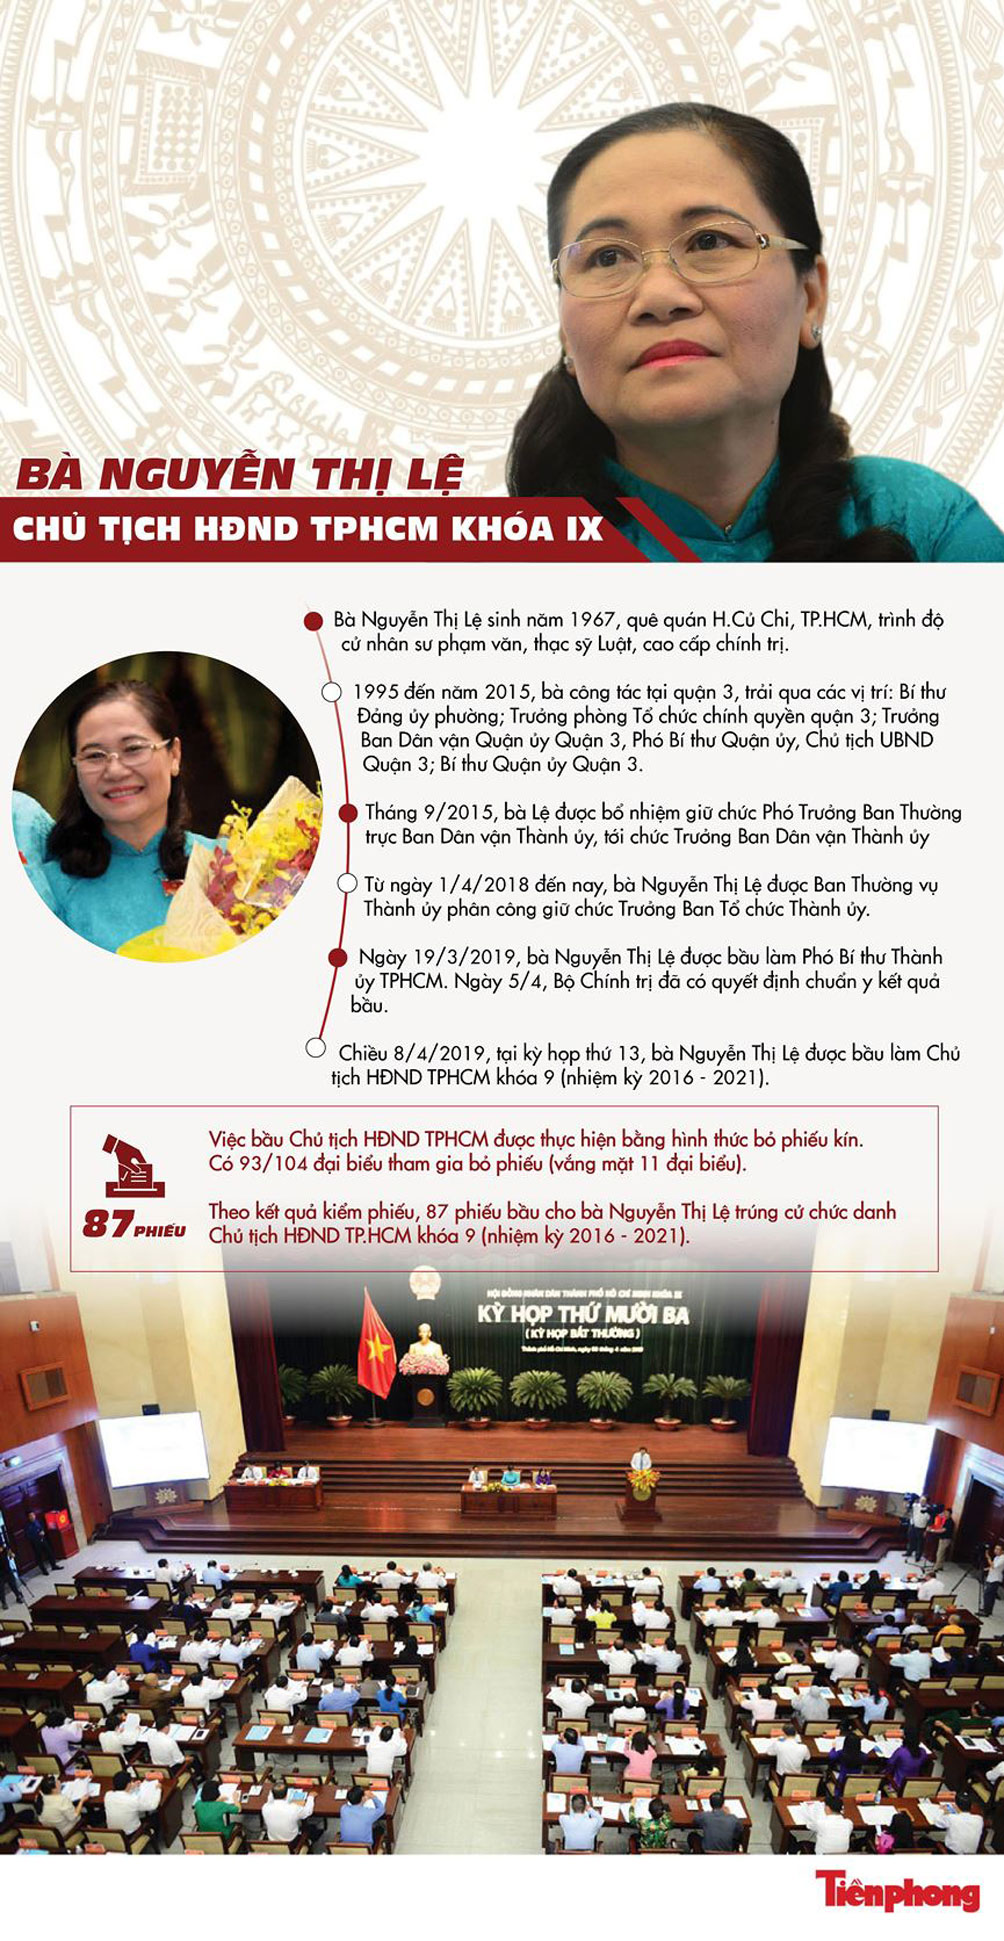 [Infographic] Chân dung tân Chủ tịch HĐND TP.HCM Nguyễn Thị Lệ - 1